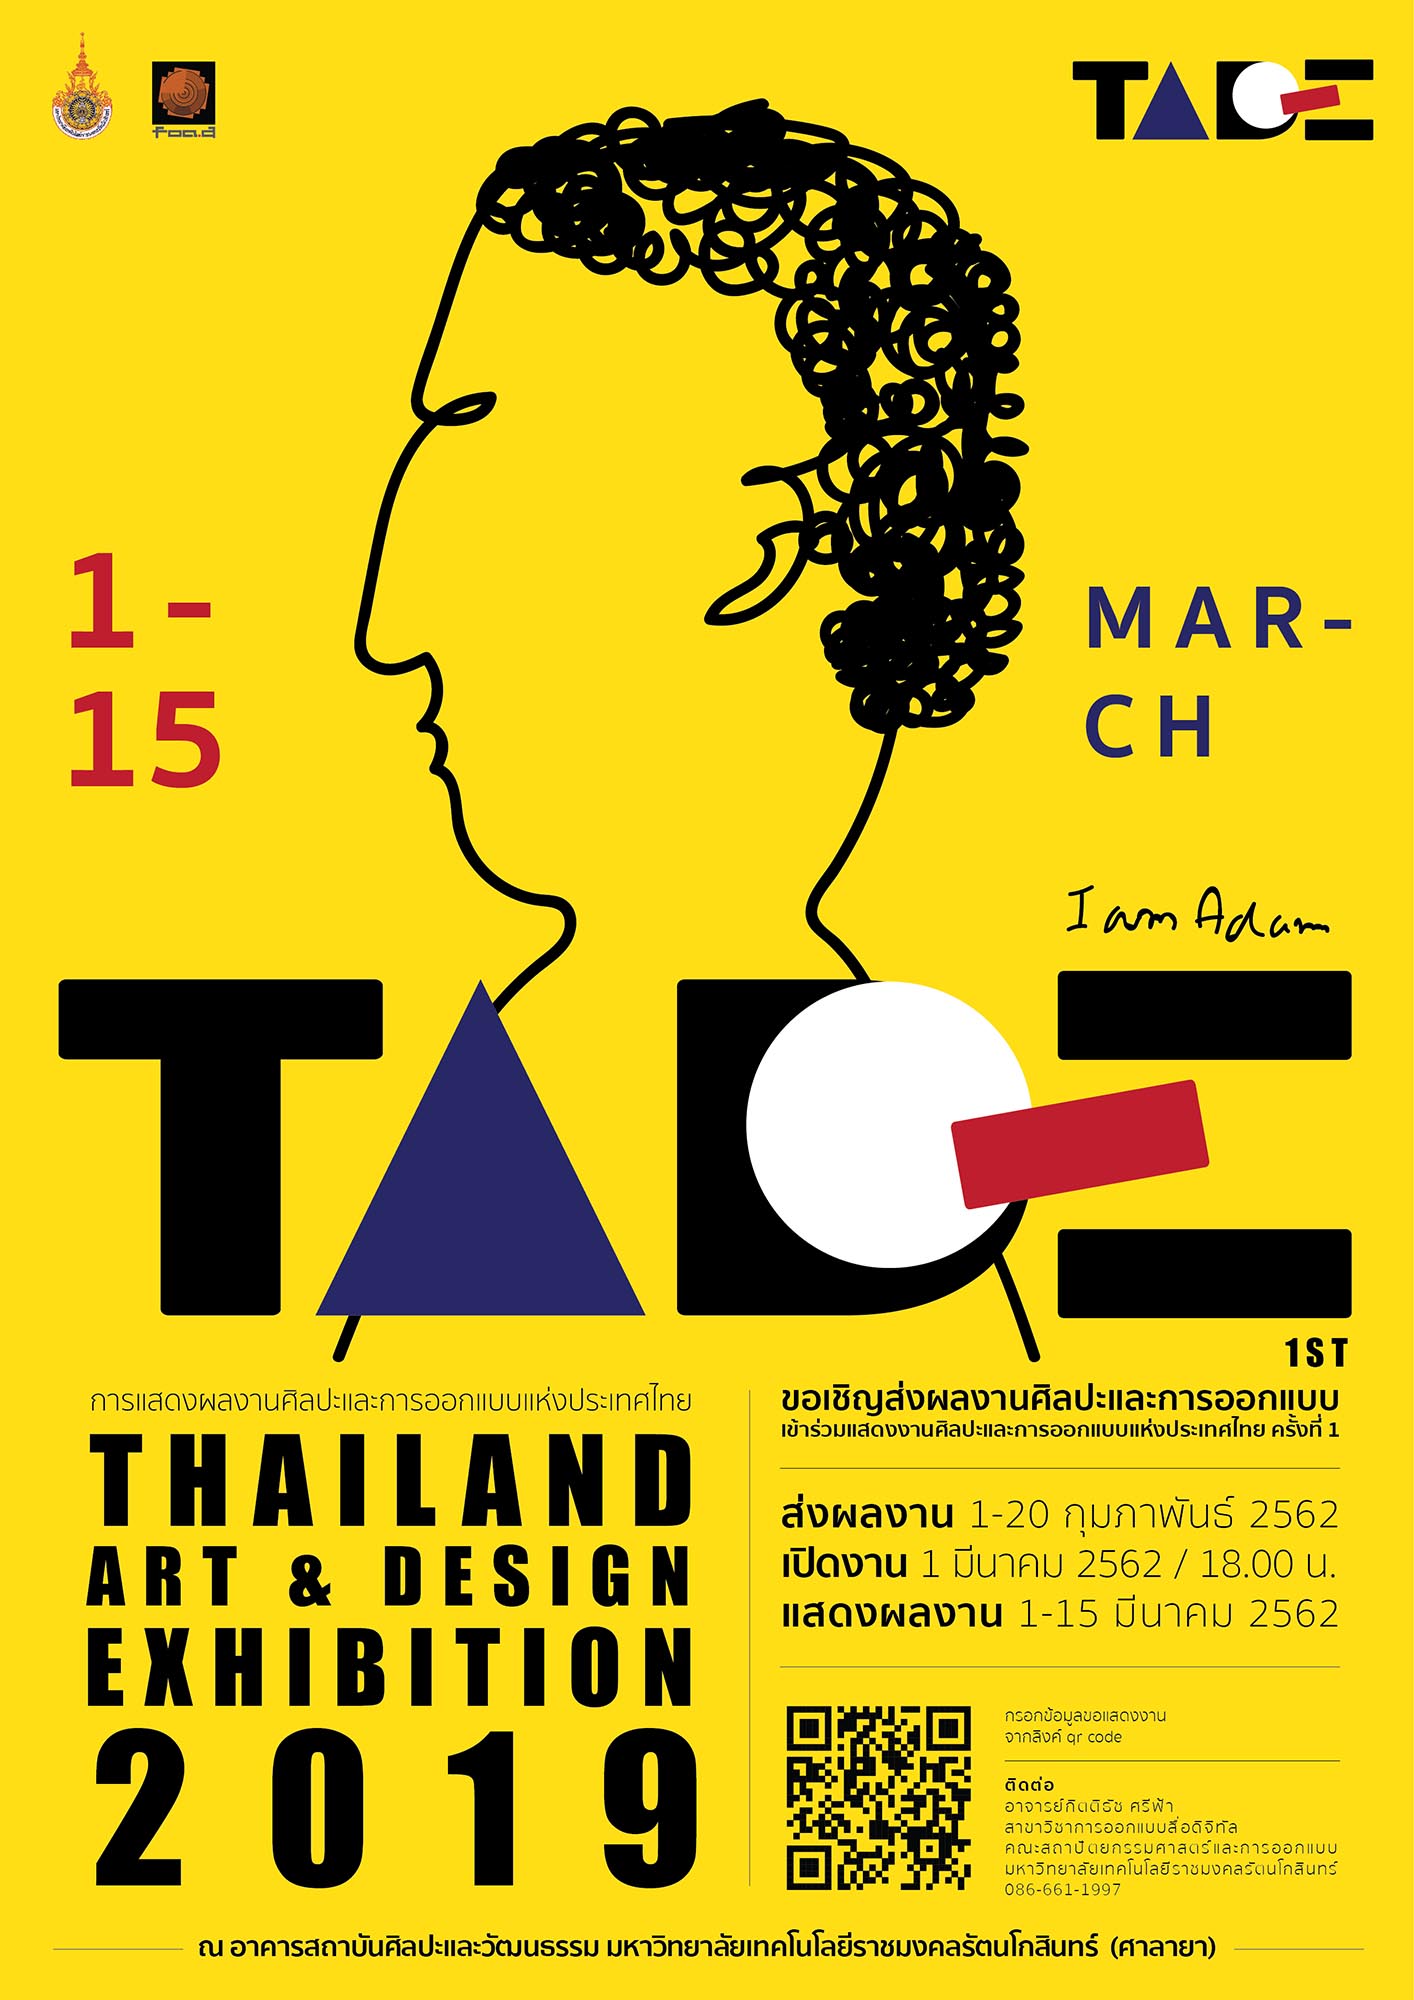 Thailand Art & Design Exhibition 2019